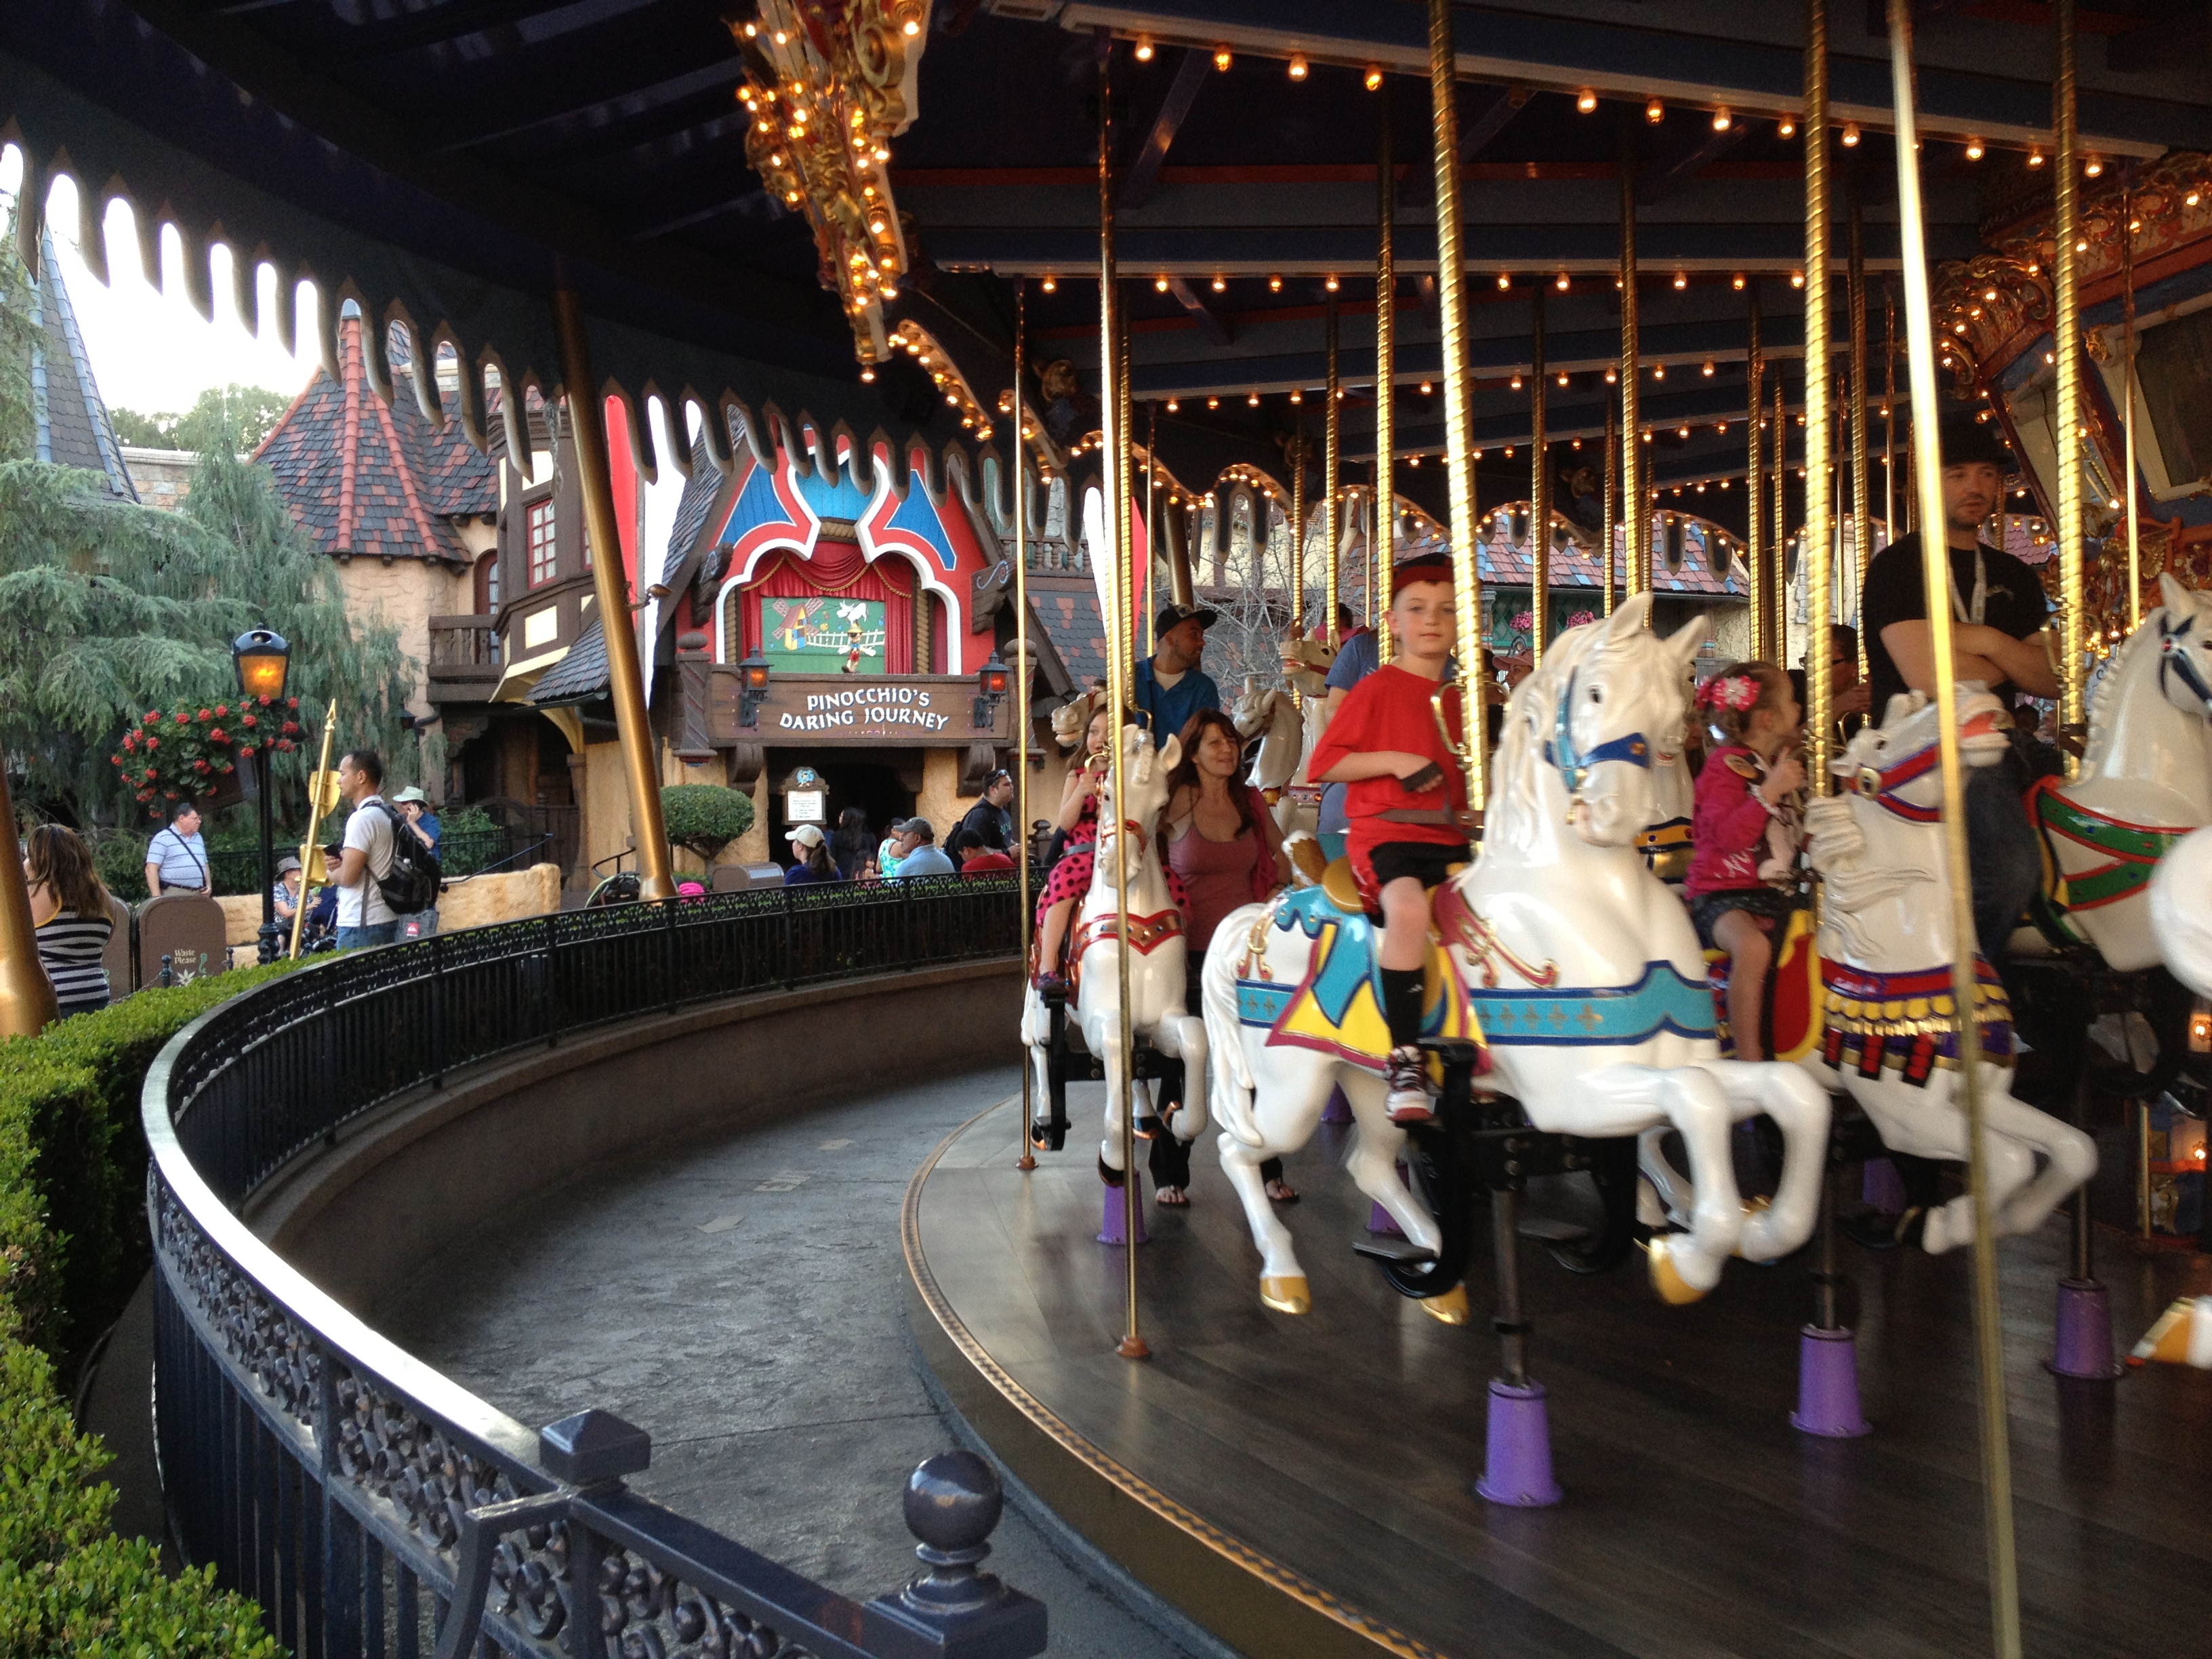 King Arthur’s Carousal at Disneyland